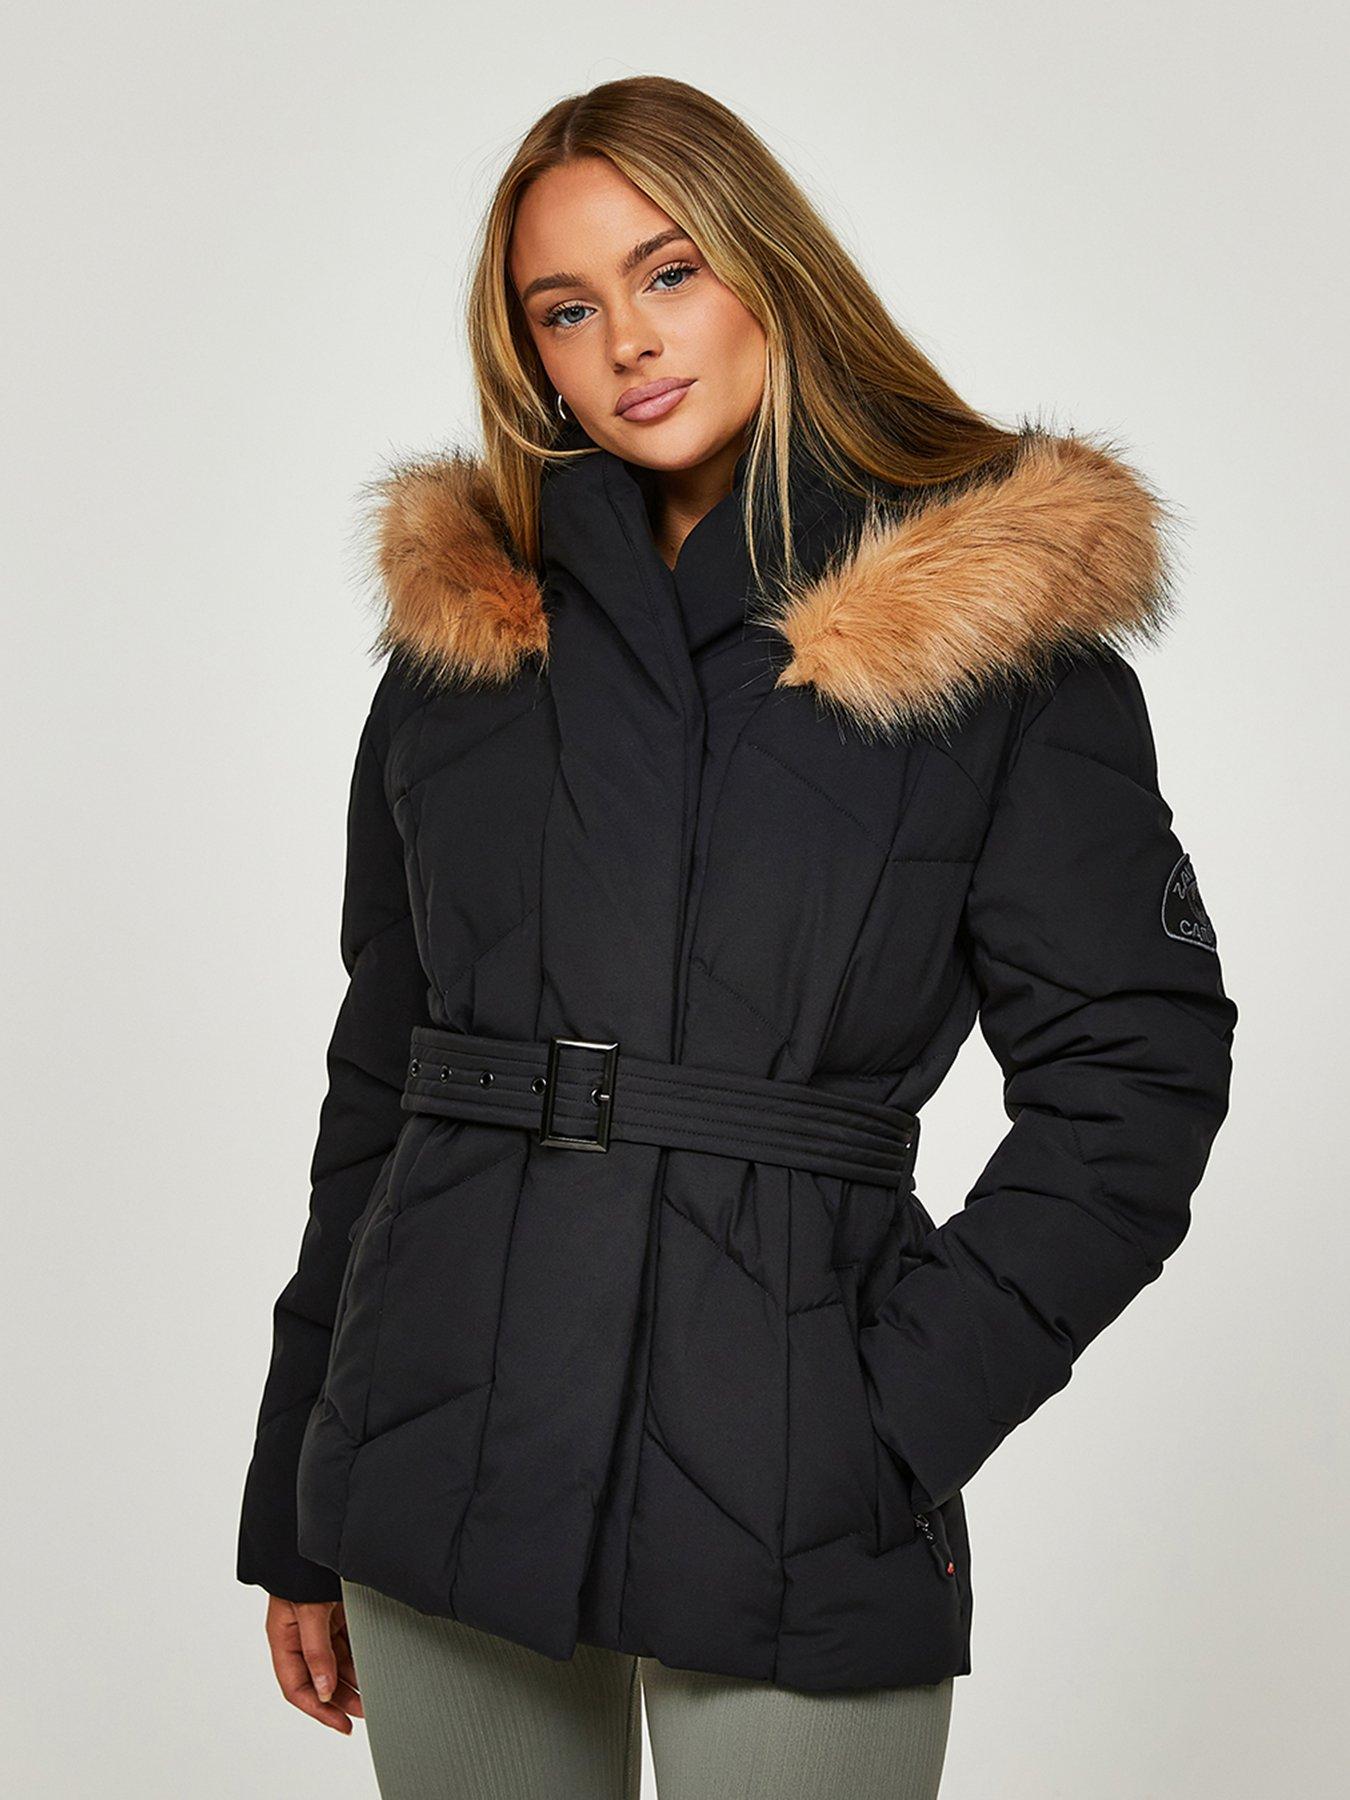 Zavetti canada, Coats & jackets, Women